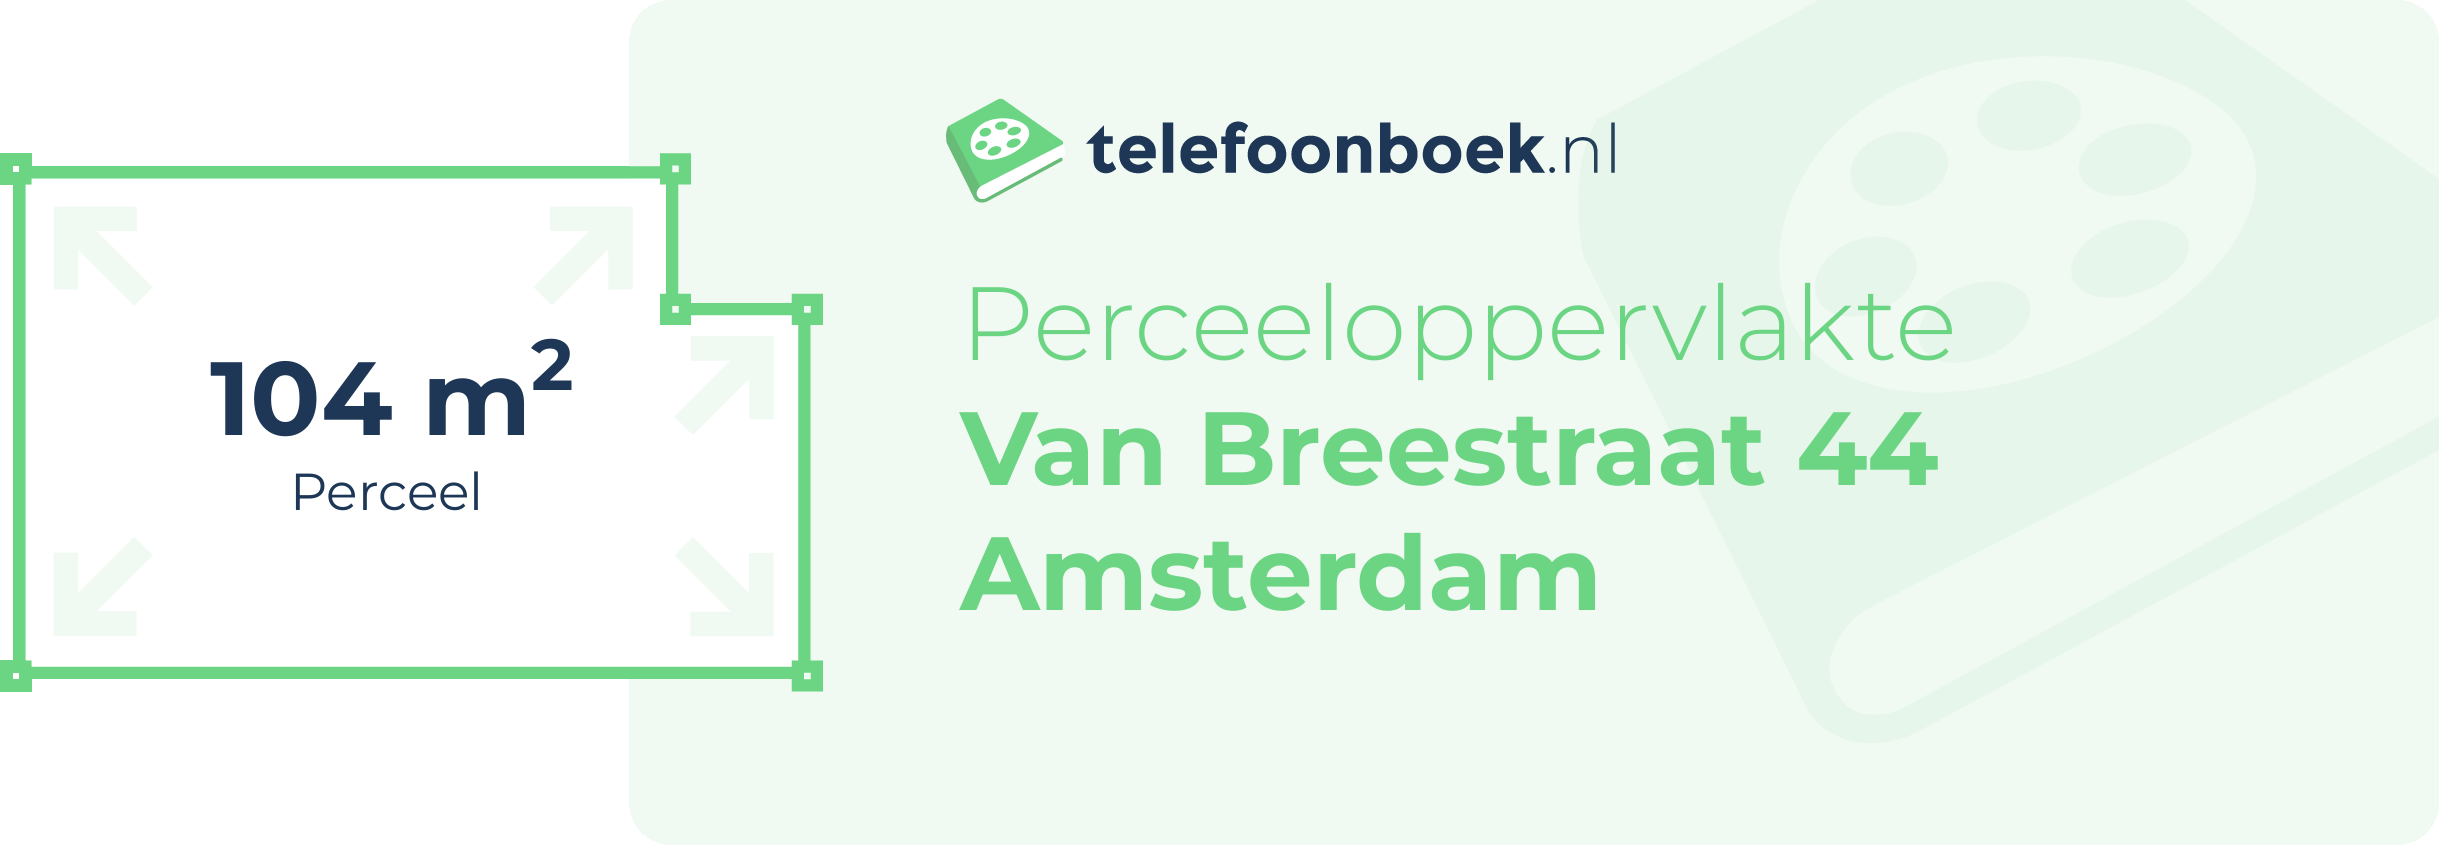 Perceeloppervlakte Van Breestraat 44 Amsterdam